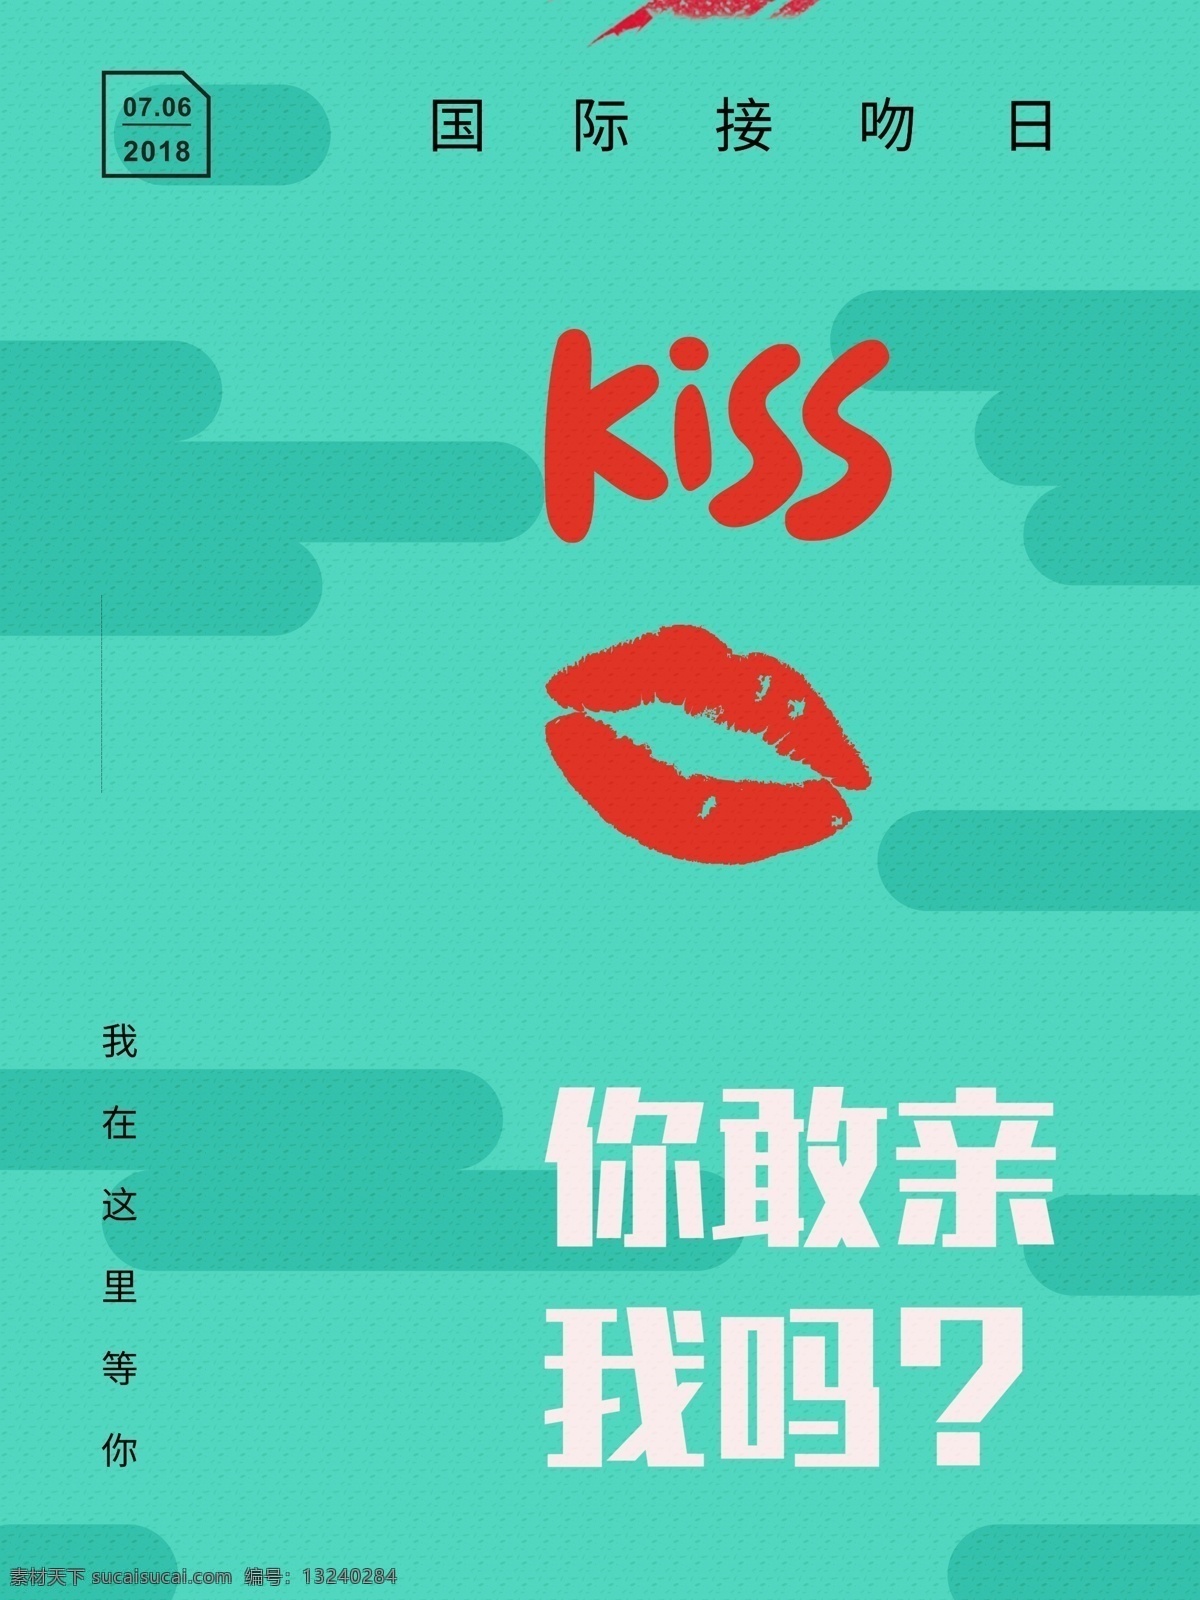 国际 接吻 日 时尚 海报 kiss 嘴唇 红色 接吻大赛 亲吻 国际激吻日